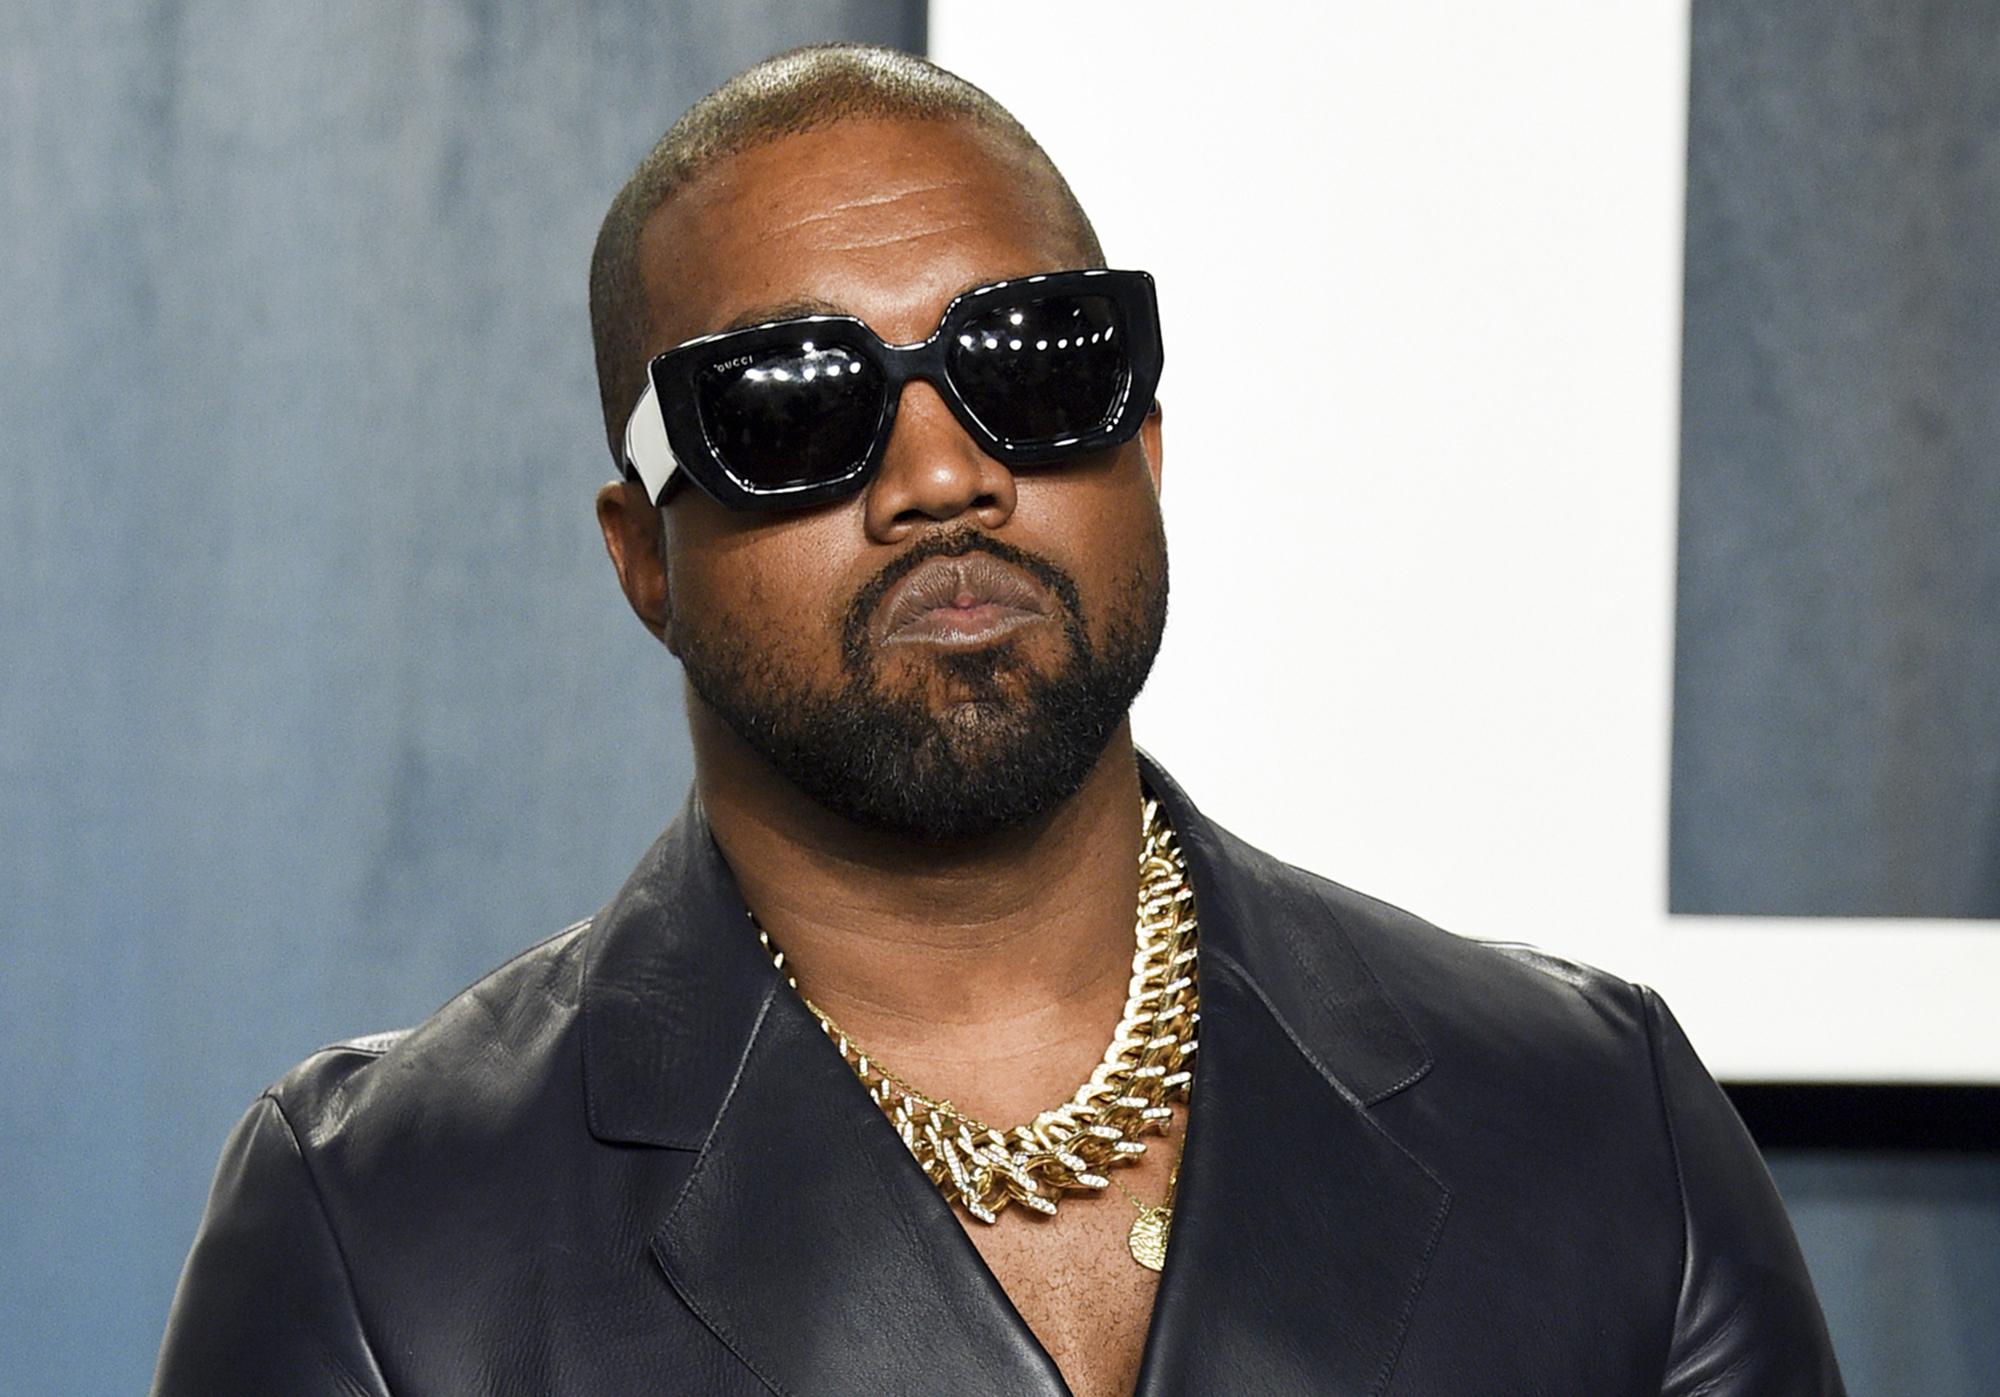 Gli ex dipendenti parlano di Kanye West: “Incredibile Adidas a sopportarlo”